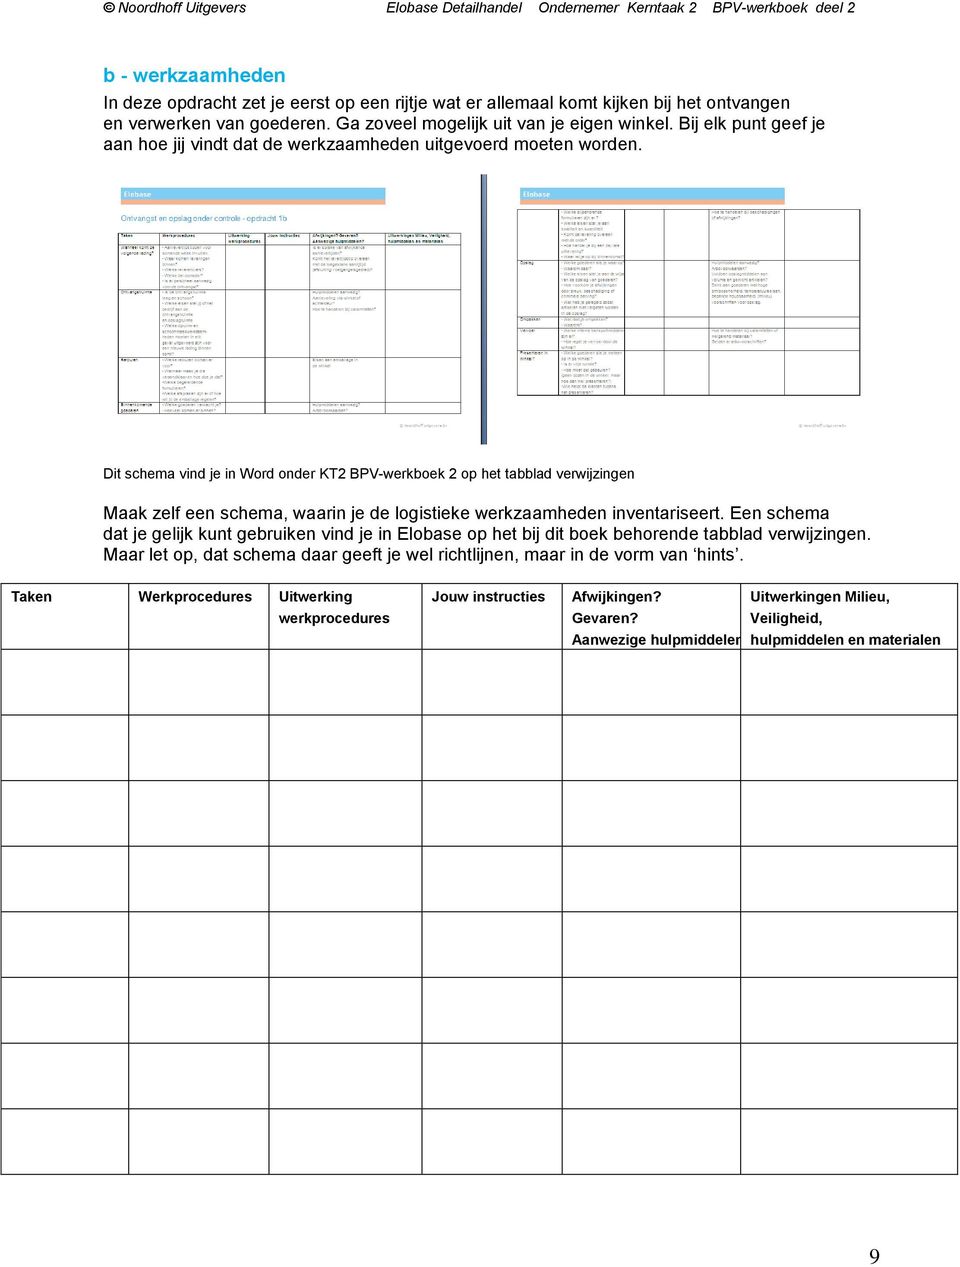 Dit schema vind je in Word onder KT2 BPV-werkboek 2 op het tabblad verwijzingen Maak zelf een schema, waarin je de logistieke werkzaamheden inventariseert.